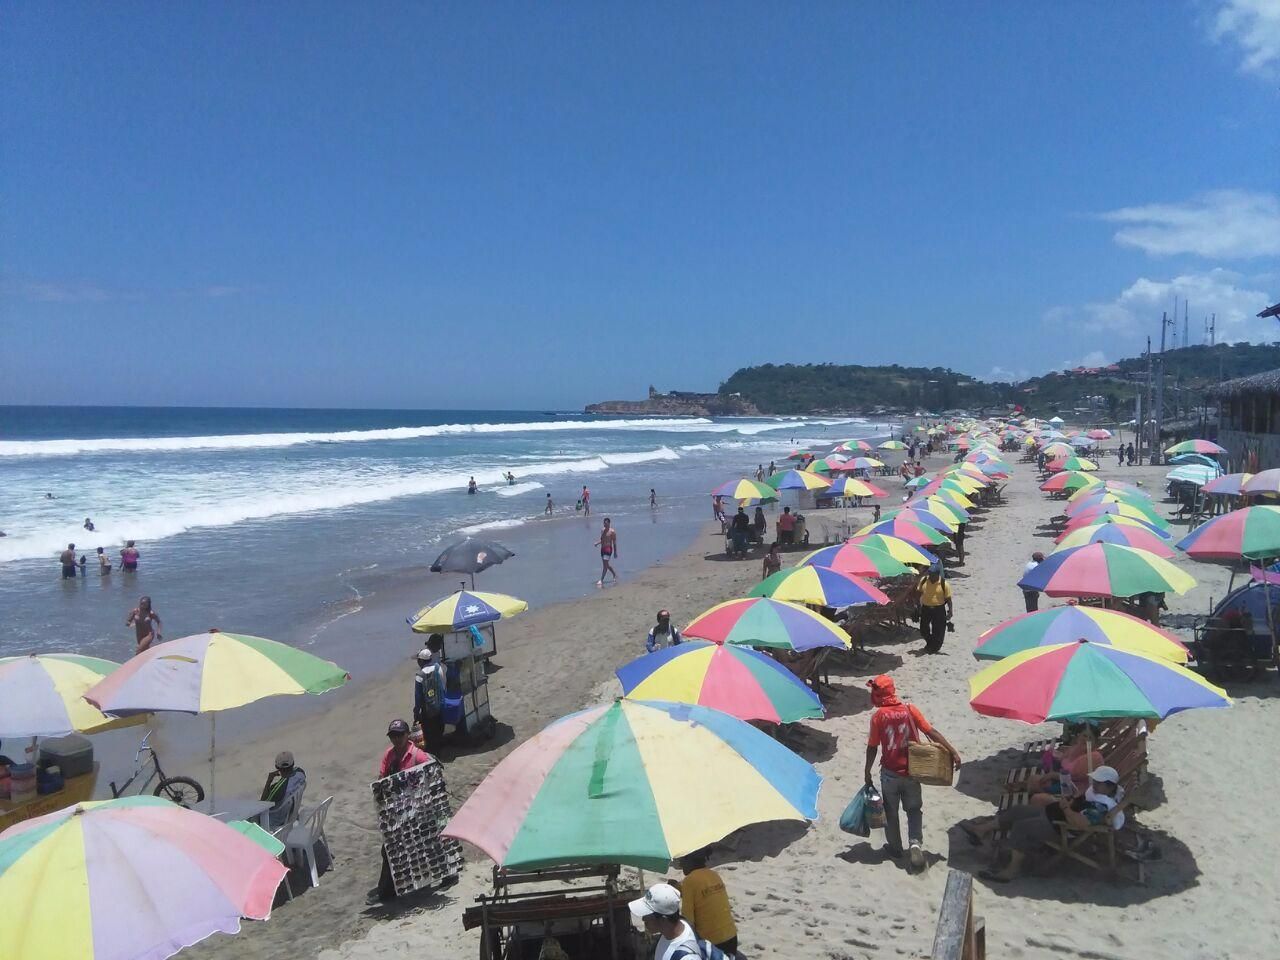 Playa de Montañita ideal para tomar el sol y para disfrutar del surf, puedes alquilar tablas.